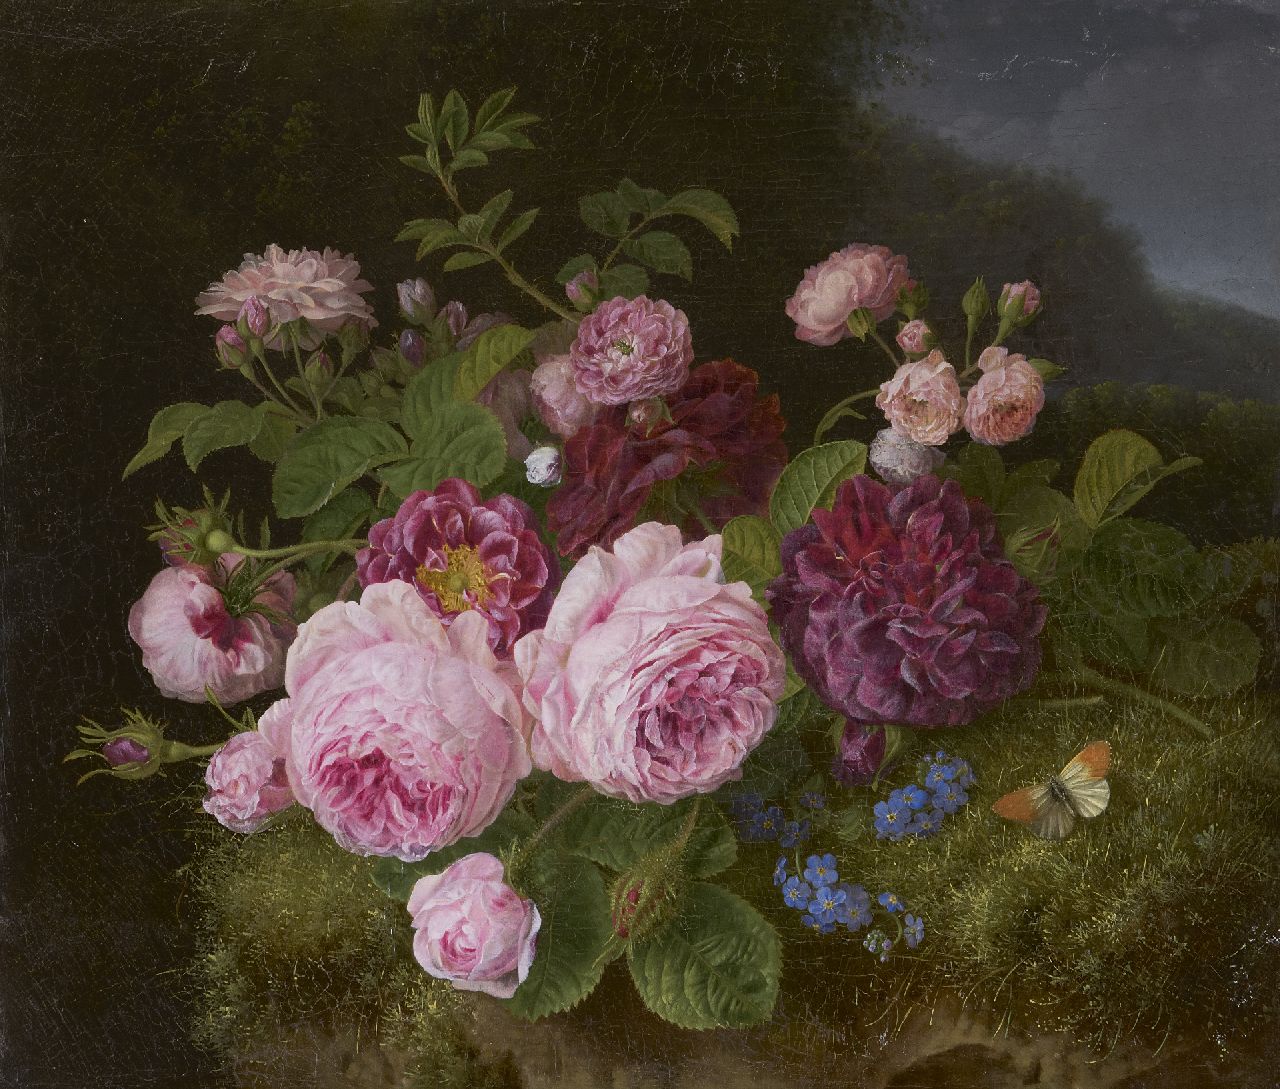 Knip H.G.  | 'Henriëtte' Geertruida Knip | Schilderijen te koop aangeboden | Boeket rozen op de bosgrond, olieverf op doek 36,3 x 42,7 cm